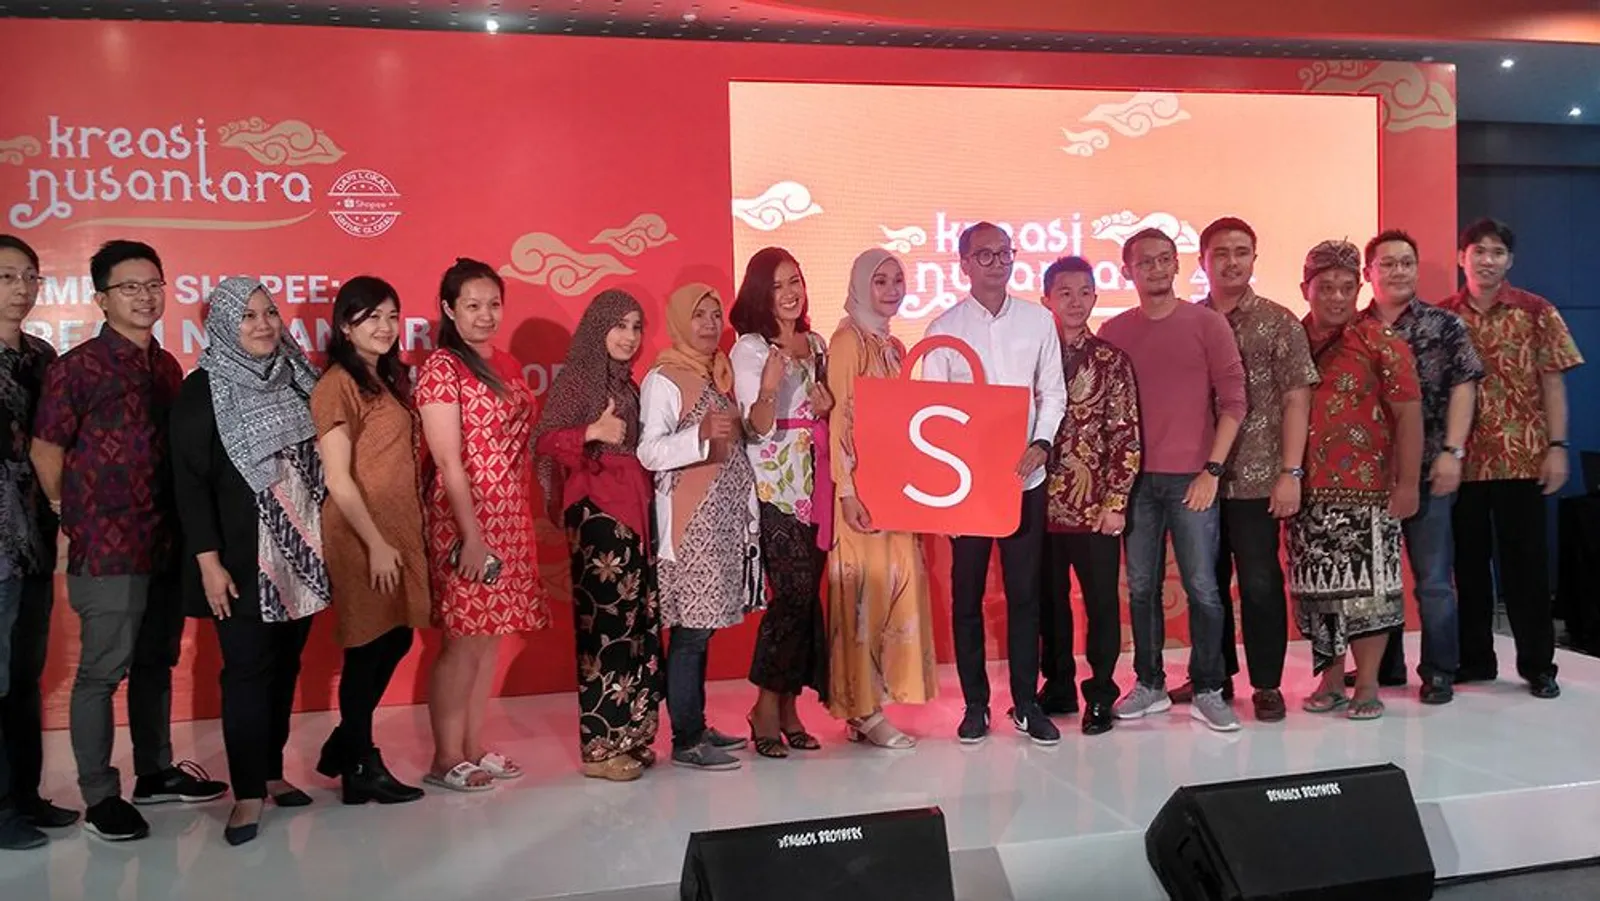 Bersama Karya Asli Indonesia, Shopee Siap Tembus Pasar Global